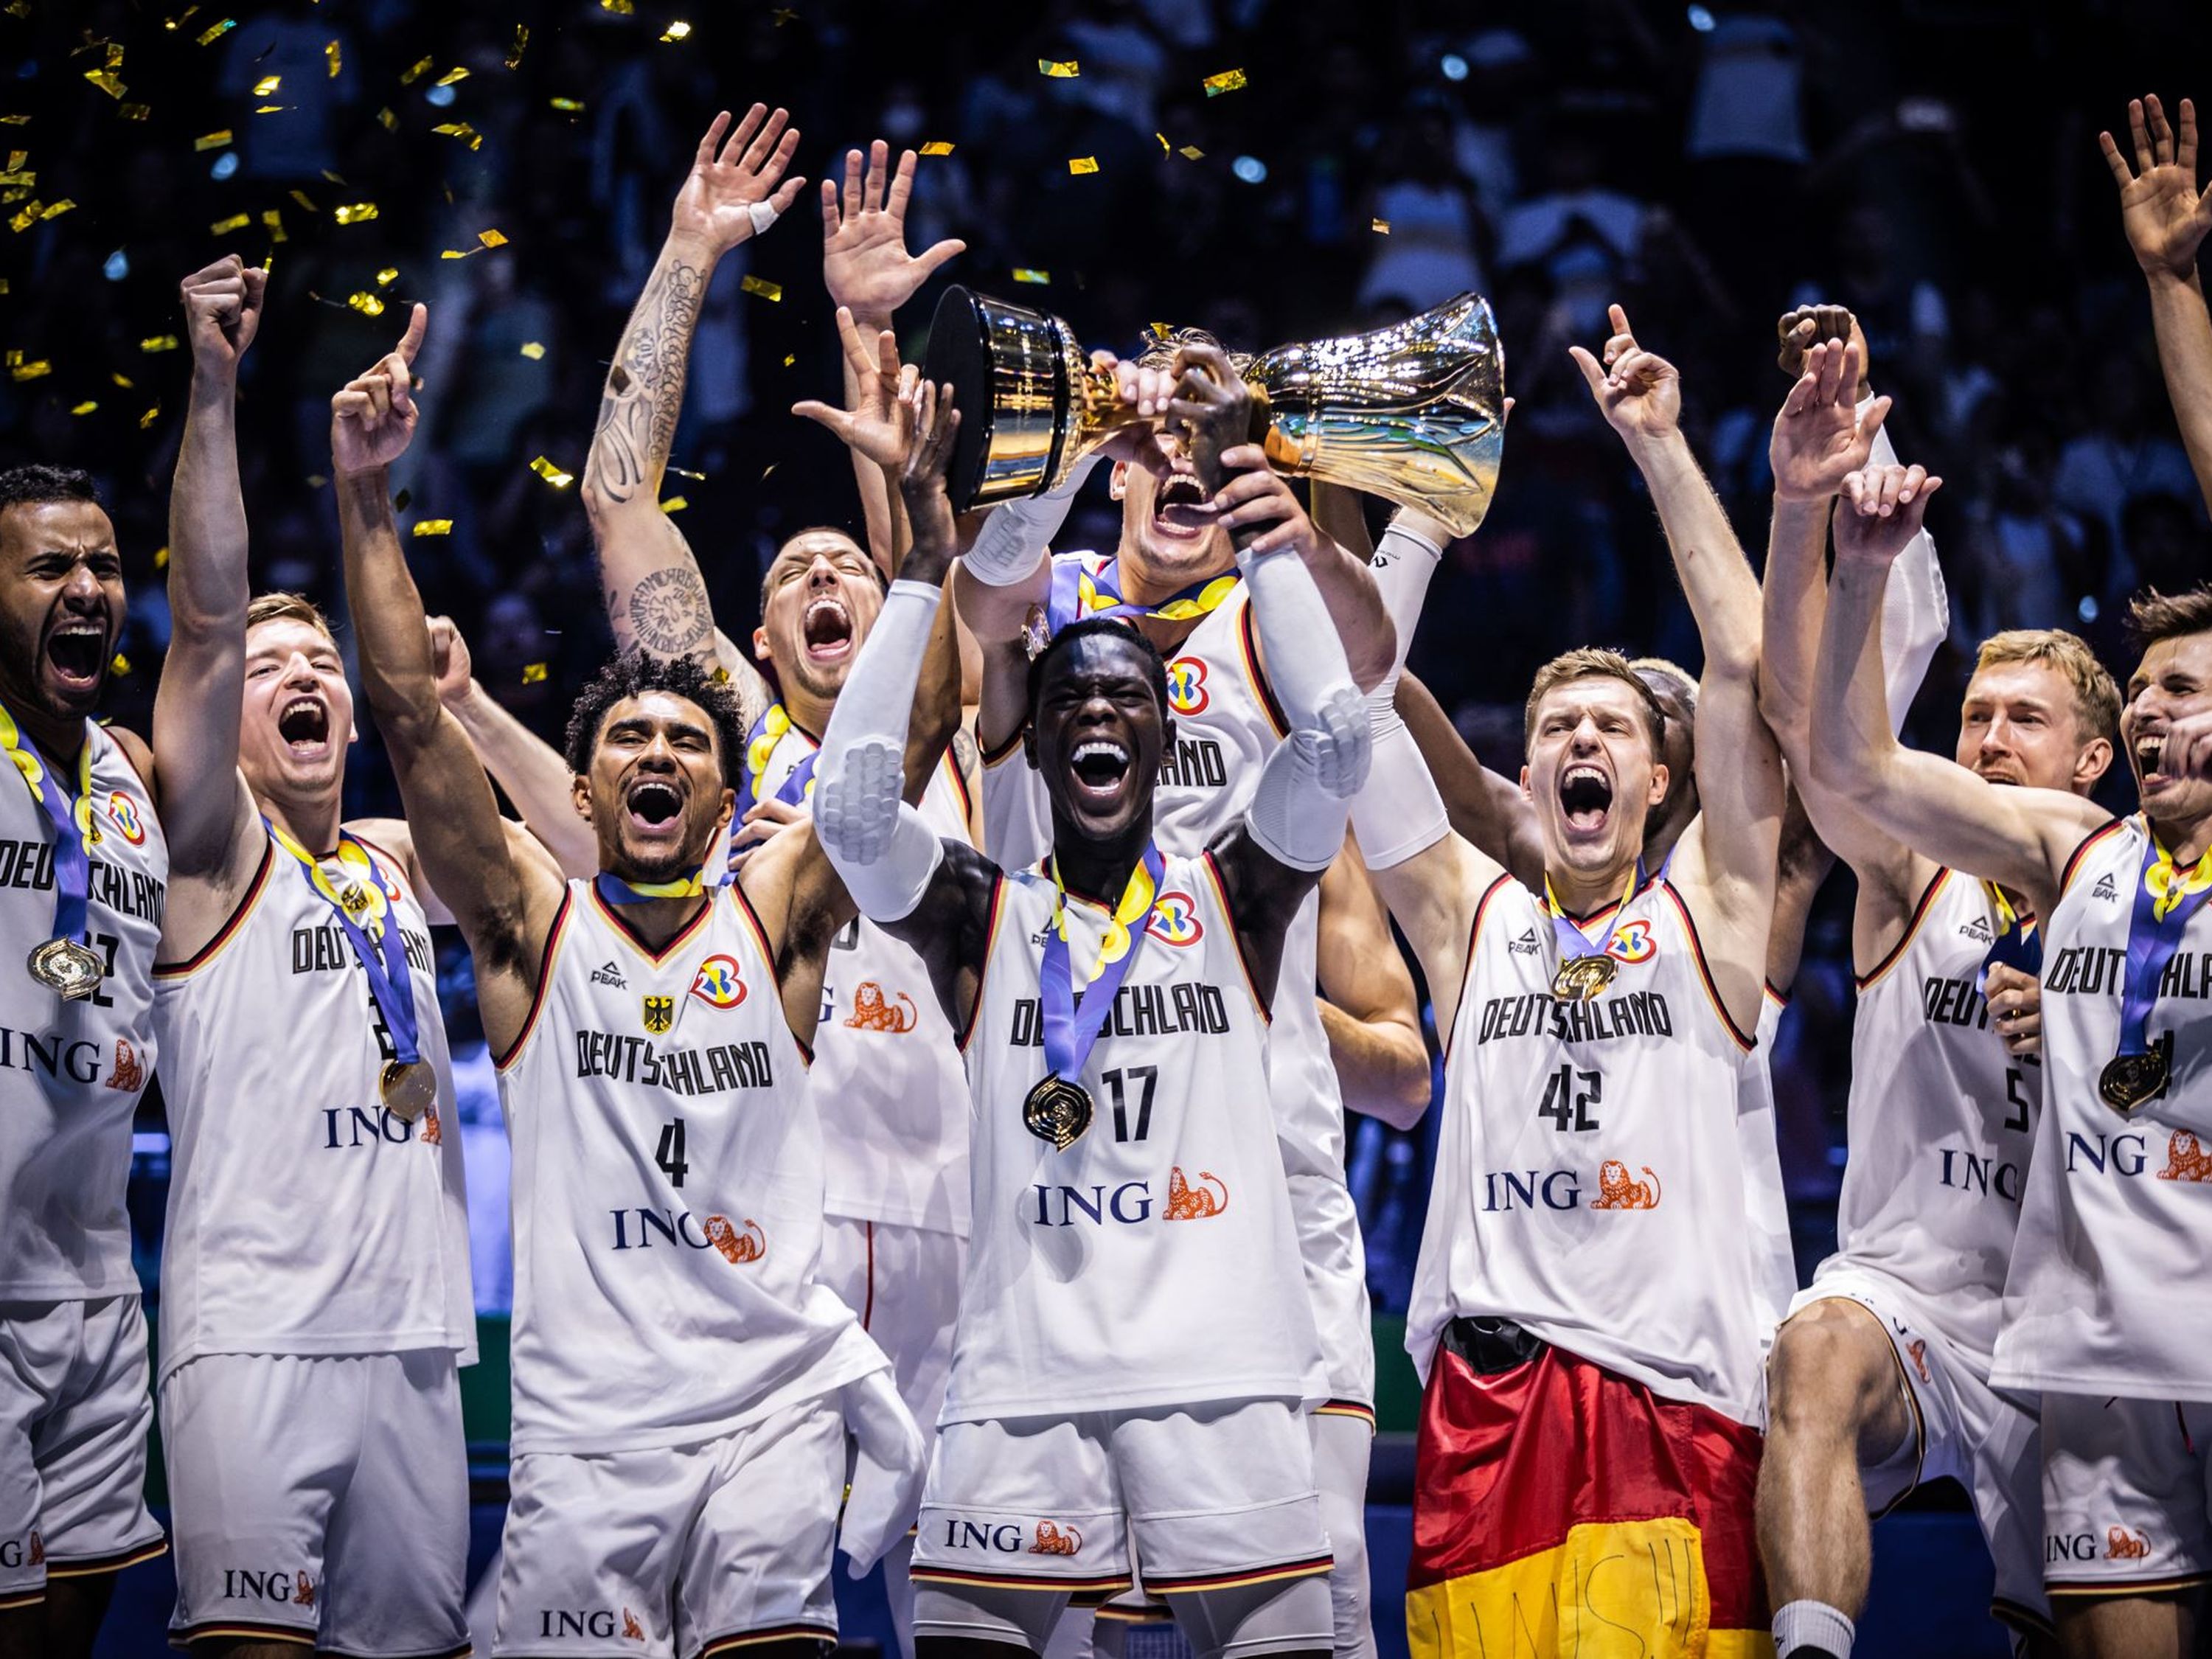 Die deutsche Basketball-Nationalmannschaft der Herren erhält für ihre herausragende Heldenreise einen BAMBI in der Kategorie "Sport"